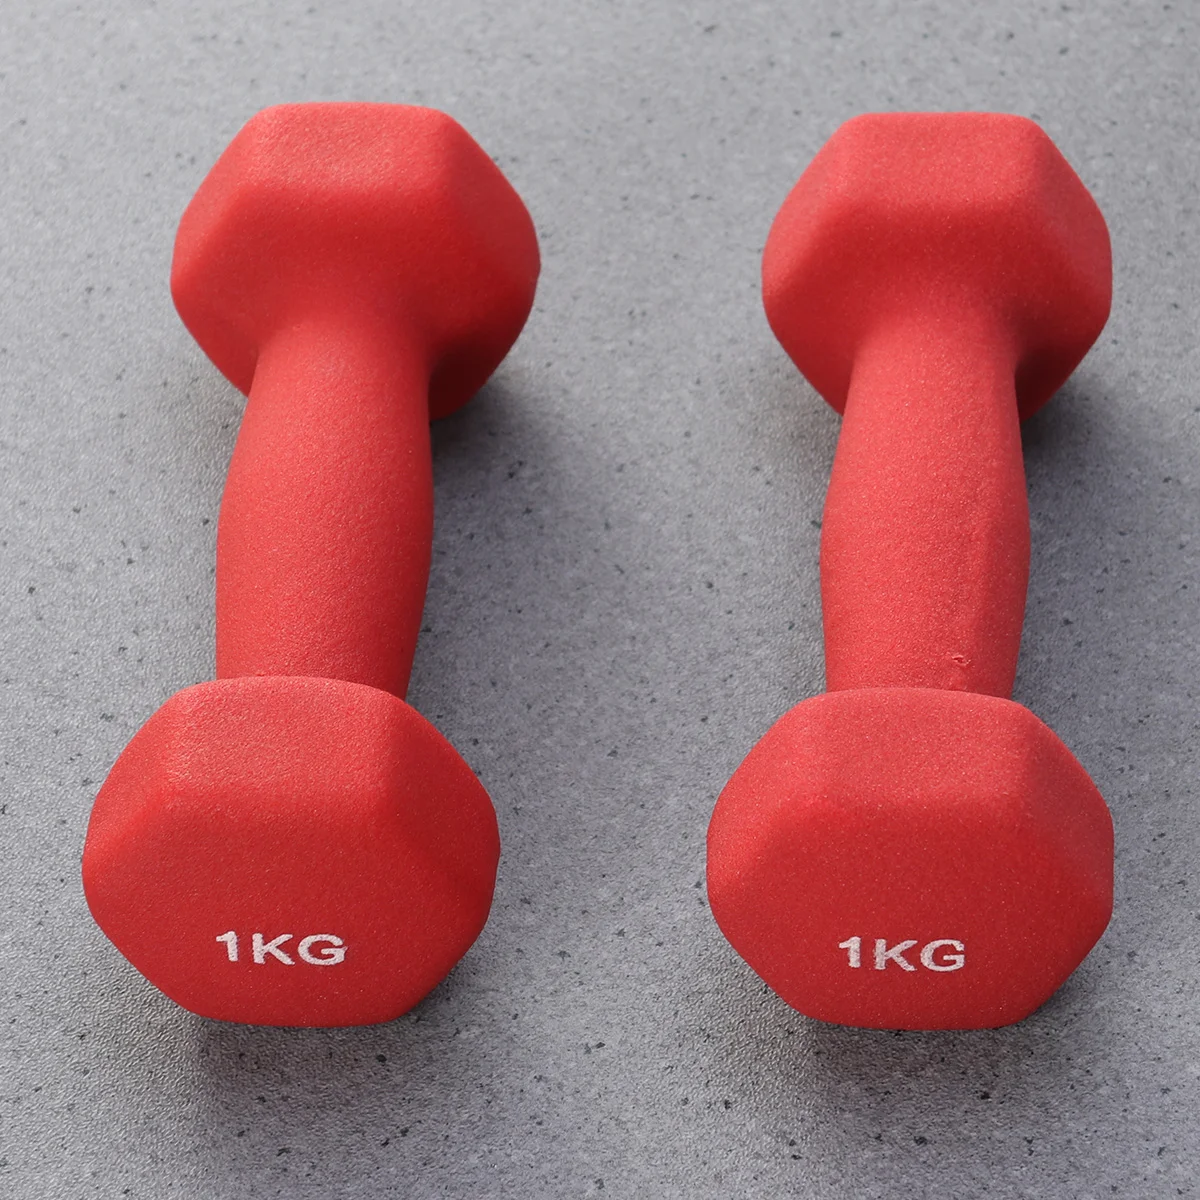 

Одна пара гантелей для упражнений весом 1 кг, эргономичные женские штанги, штанга для рук для йоги, упражнений, фитнеса (красный)